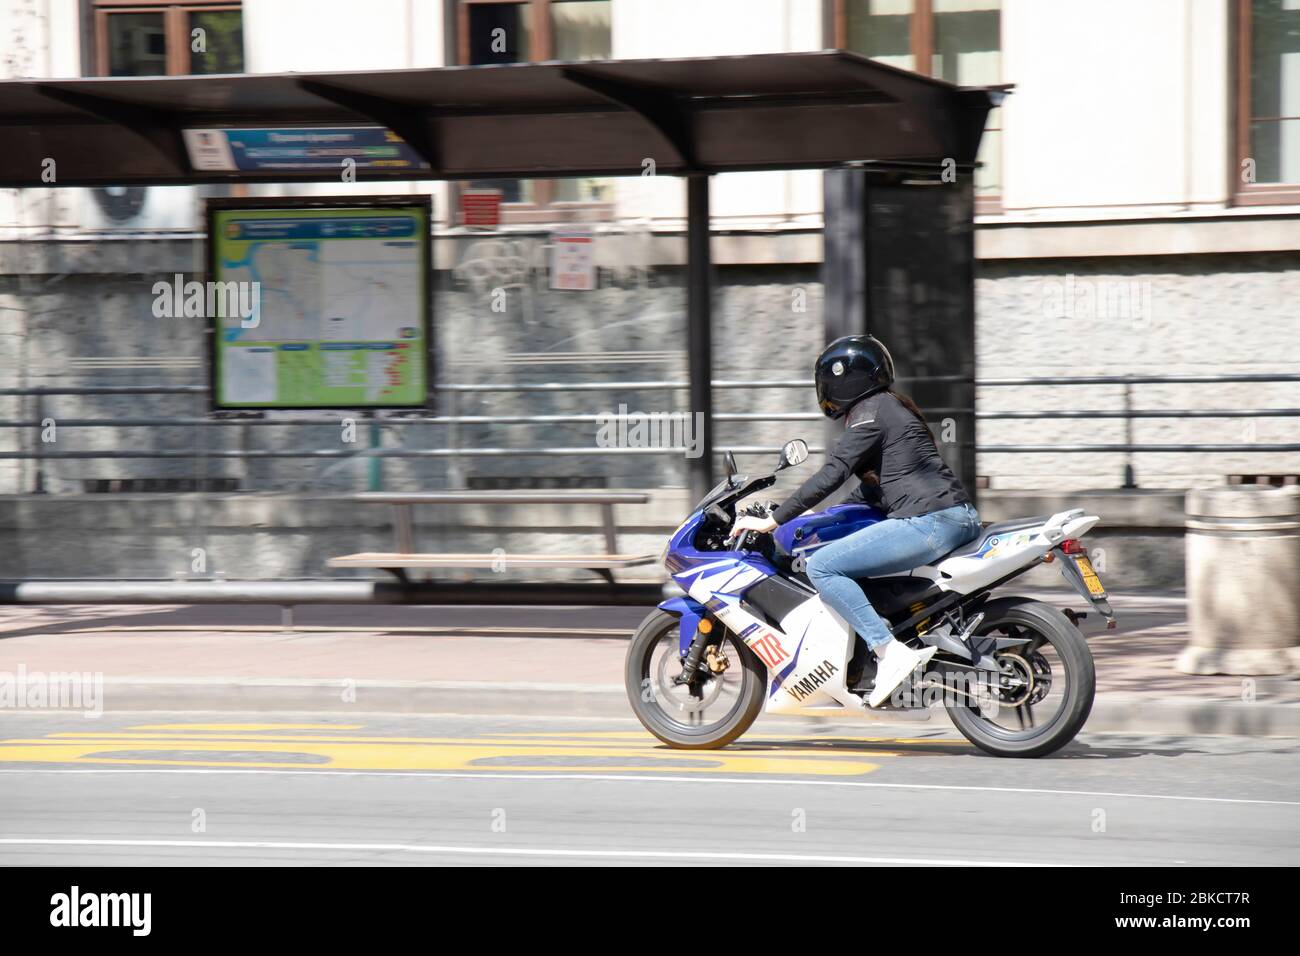 Belgrade, Serbie - 23 avril 2020: Une jeune femme qui monte une moto rapide dans une rue de ville vide Banque D'Images